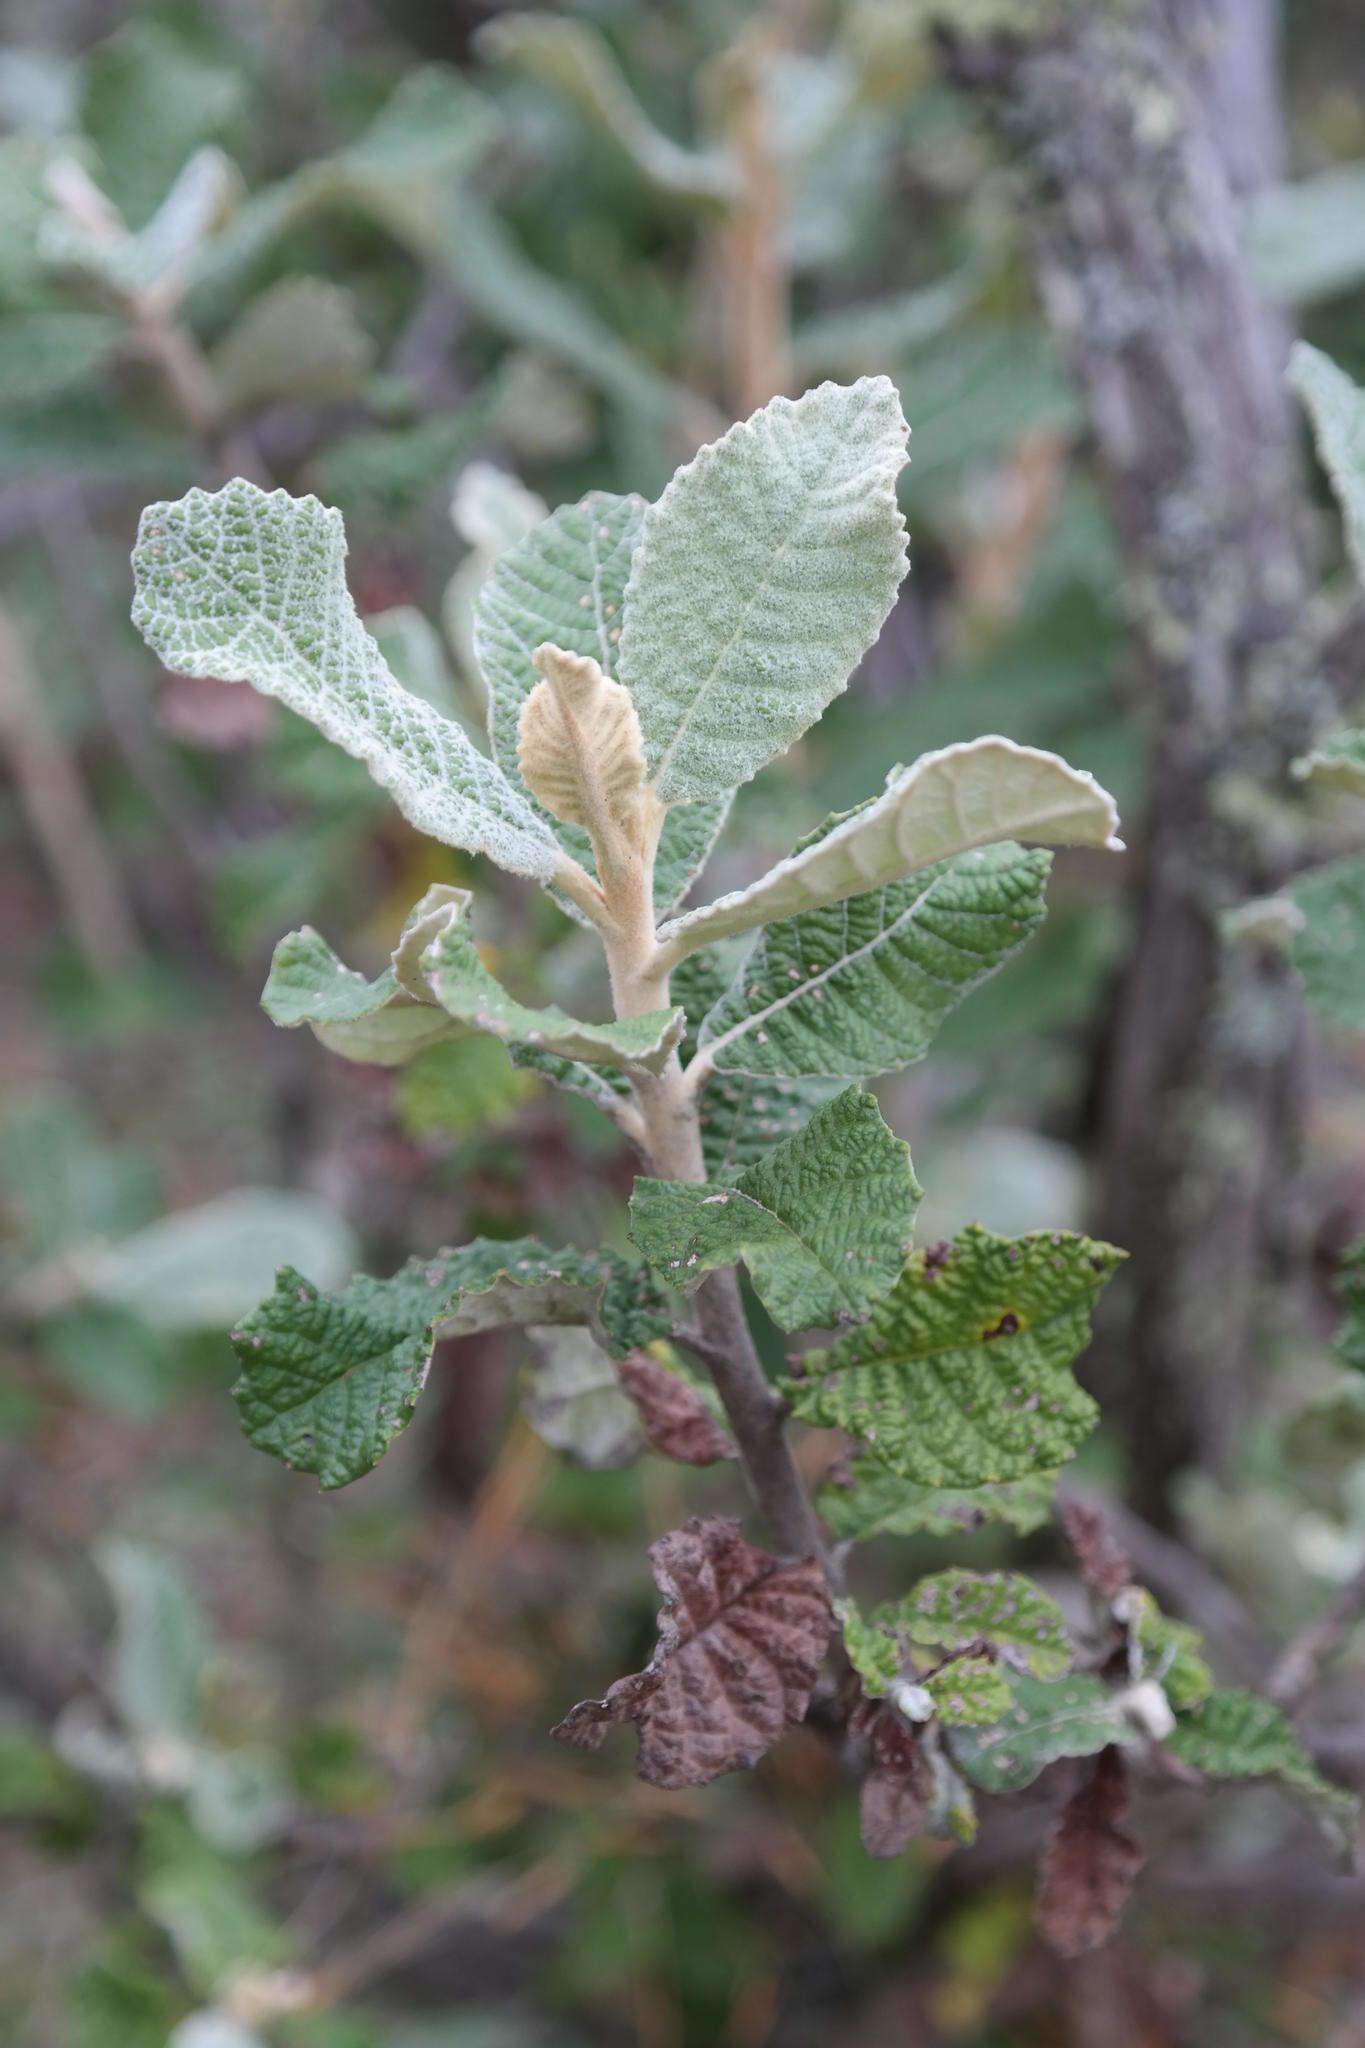 Image of Broad-leaved camphor bush